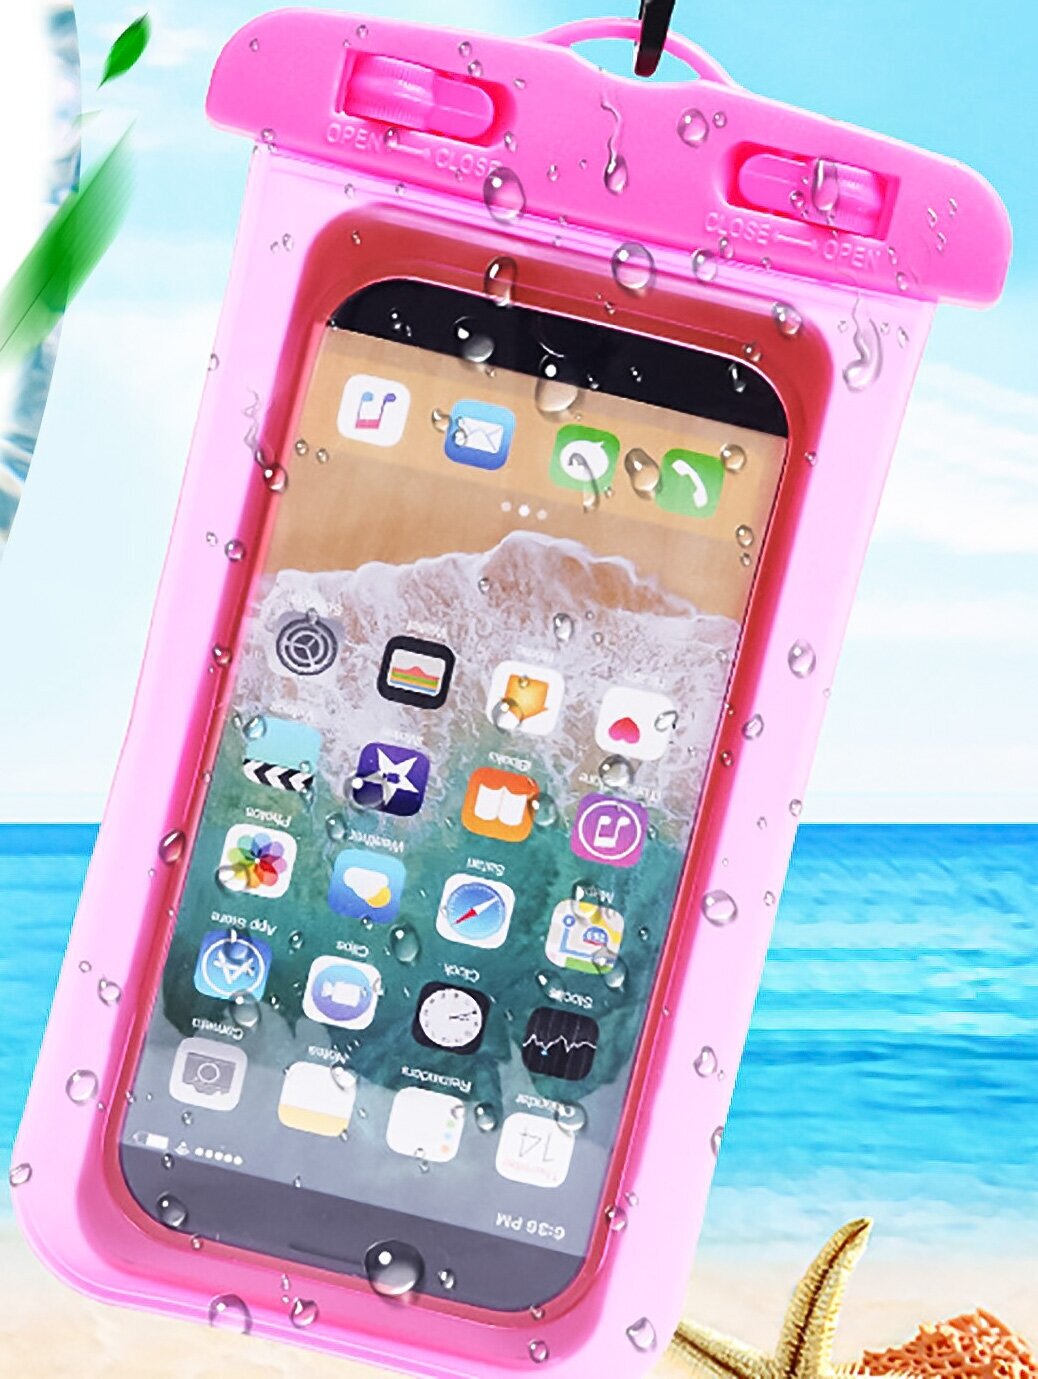 Водонепроницаемый чехол для телефона, непромокаемый чехол, универсальный размер до 7 дюймов диагонали, розовый